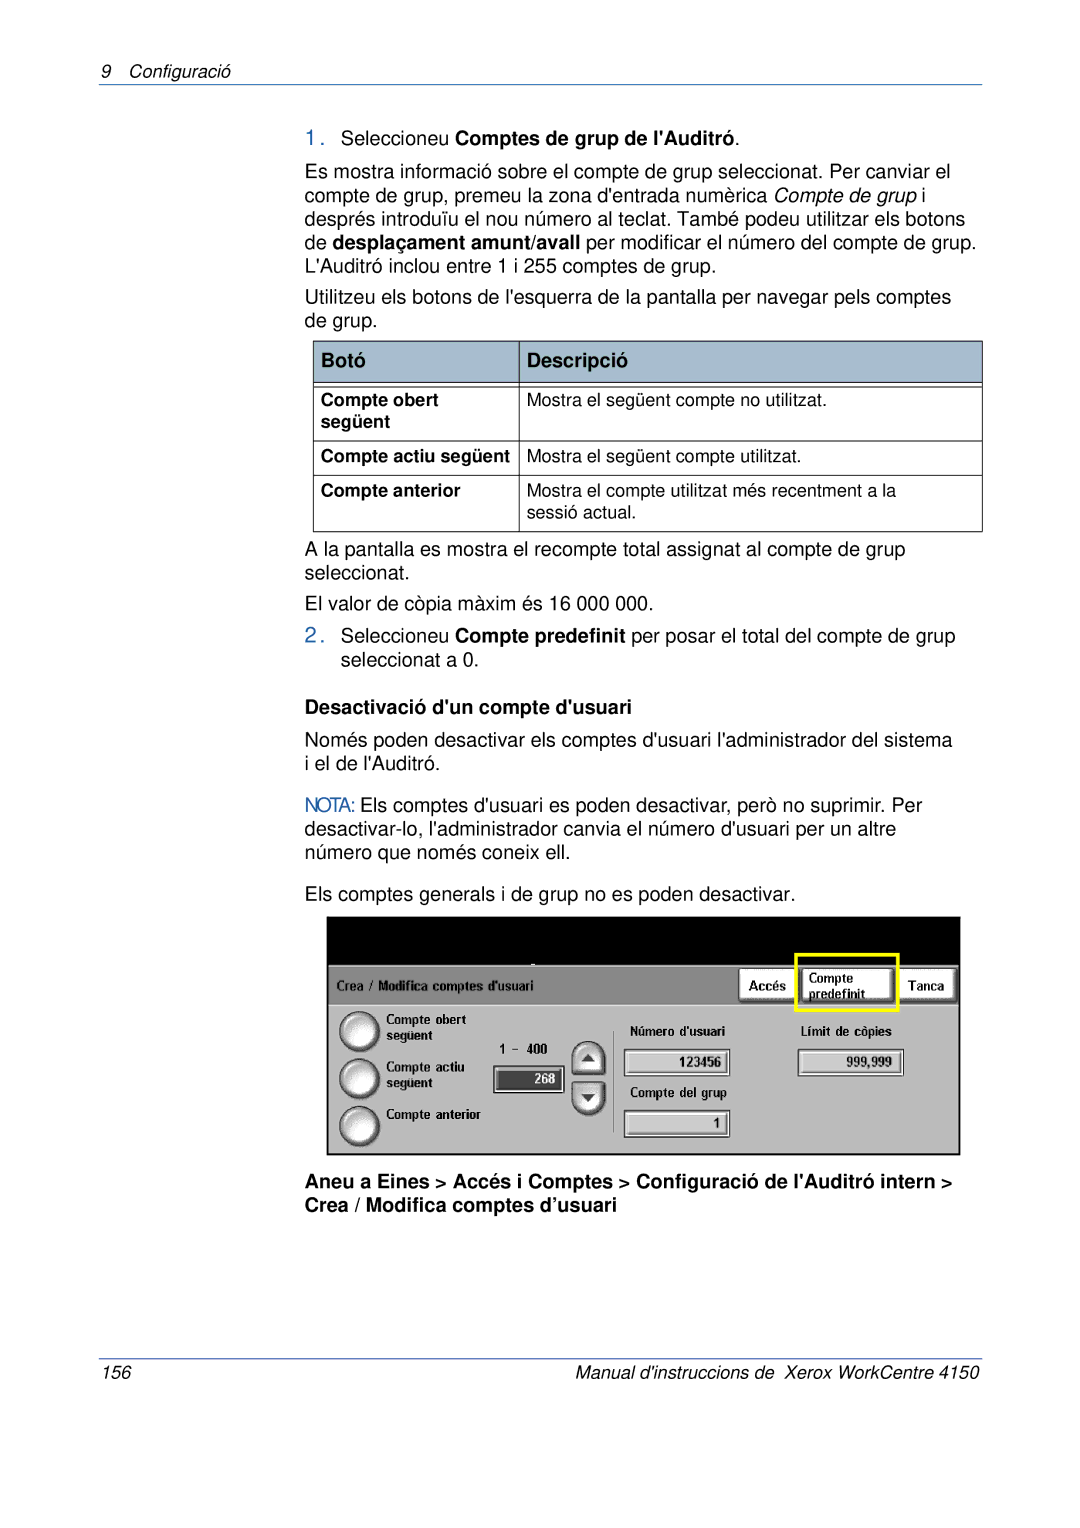 Xerox 5.0 24.03.06 manual Seleccioneu Comptes de grup de lAuditró, Desactivació dun compte dusuari 